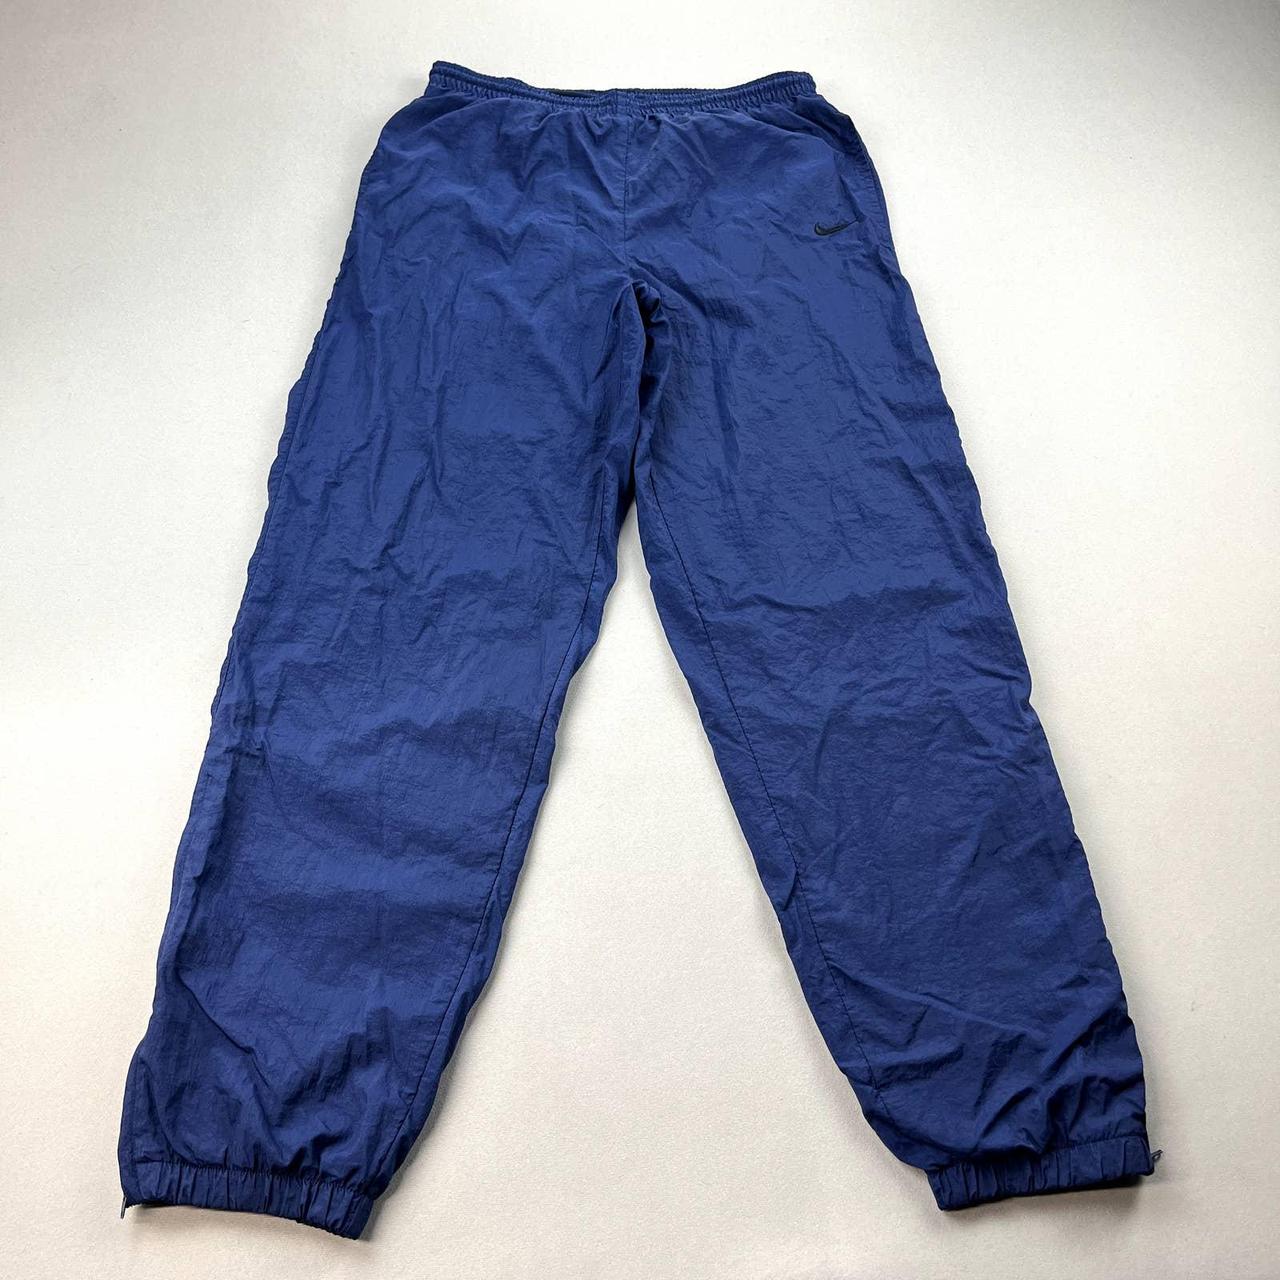 Vintage Nike Track Pants Mens Medium Navy Blue... - Depop